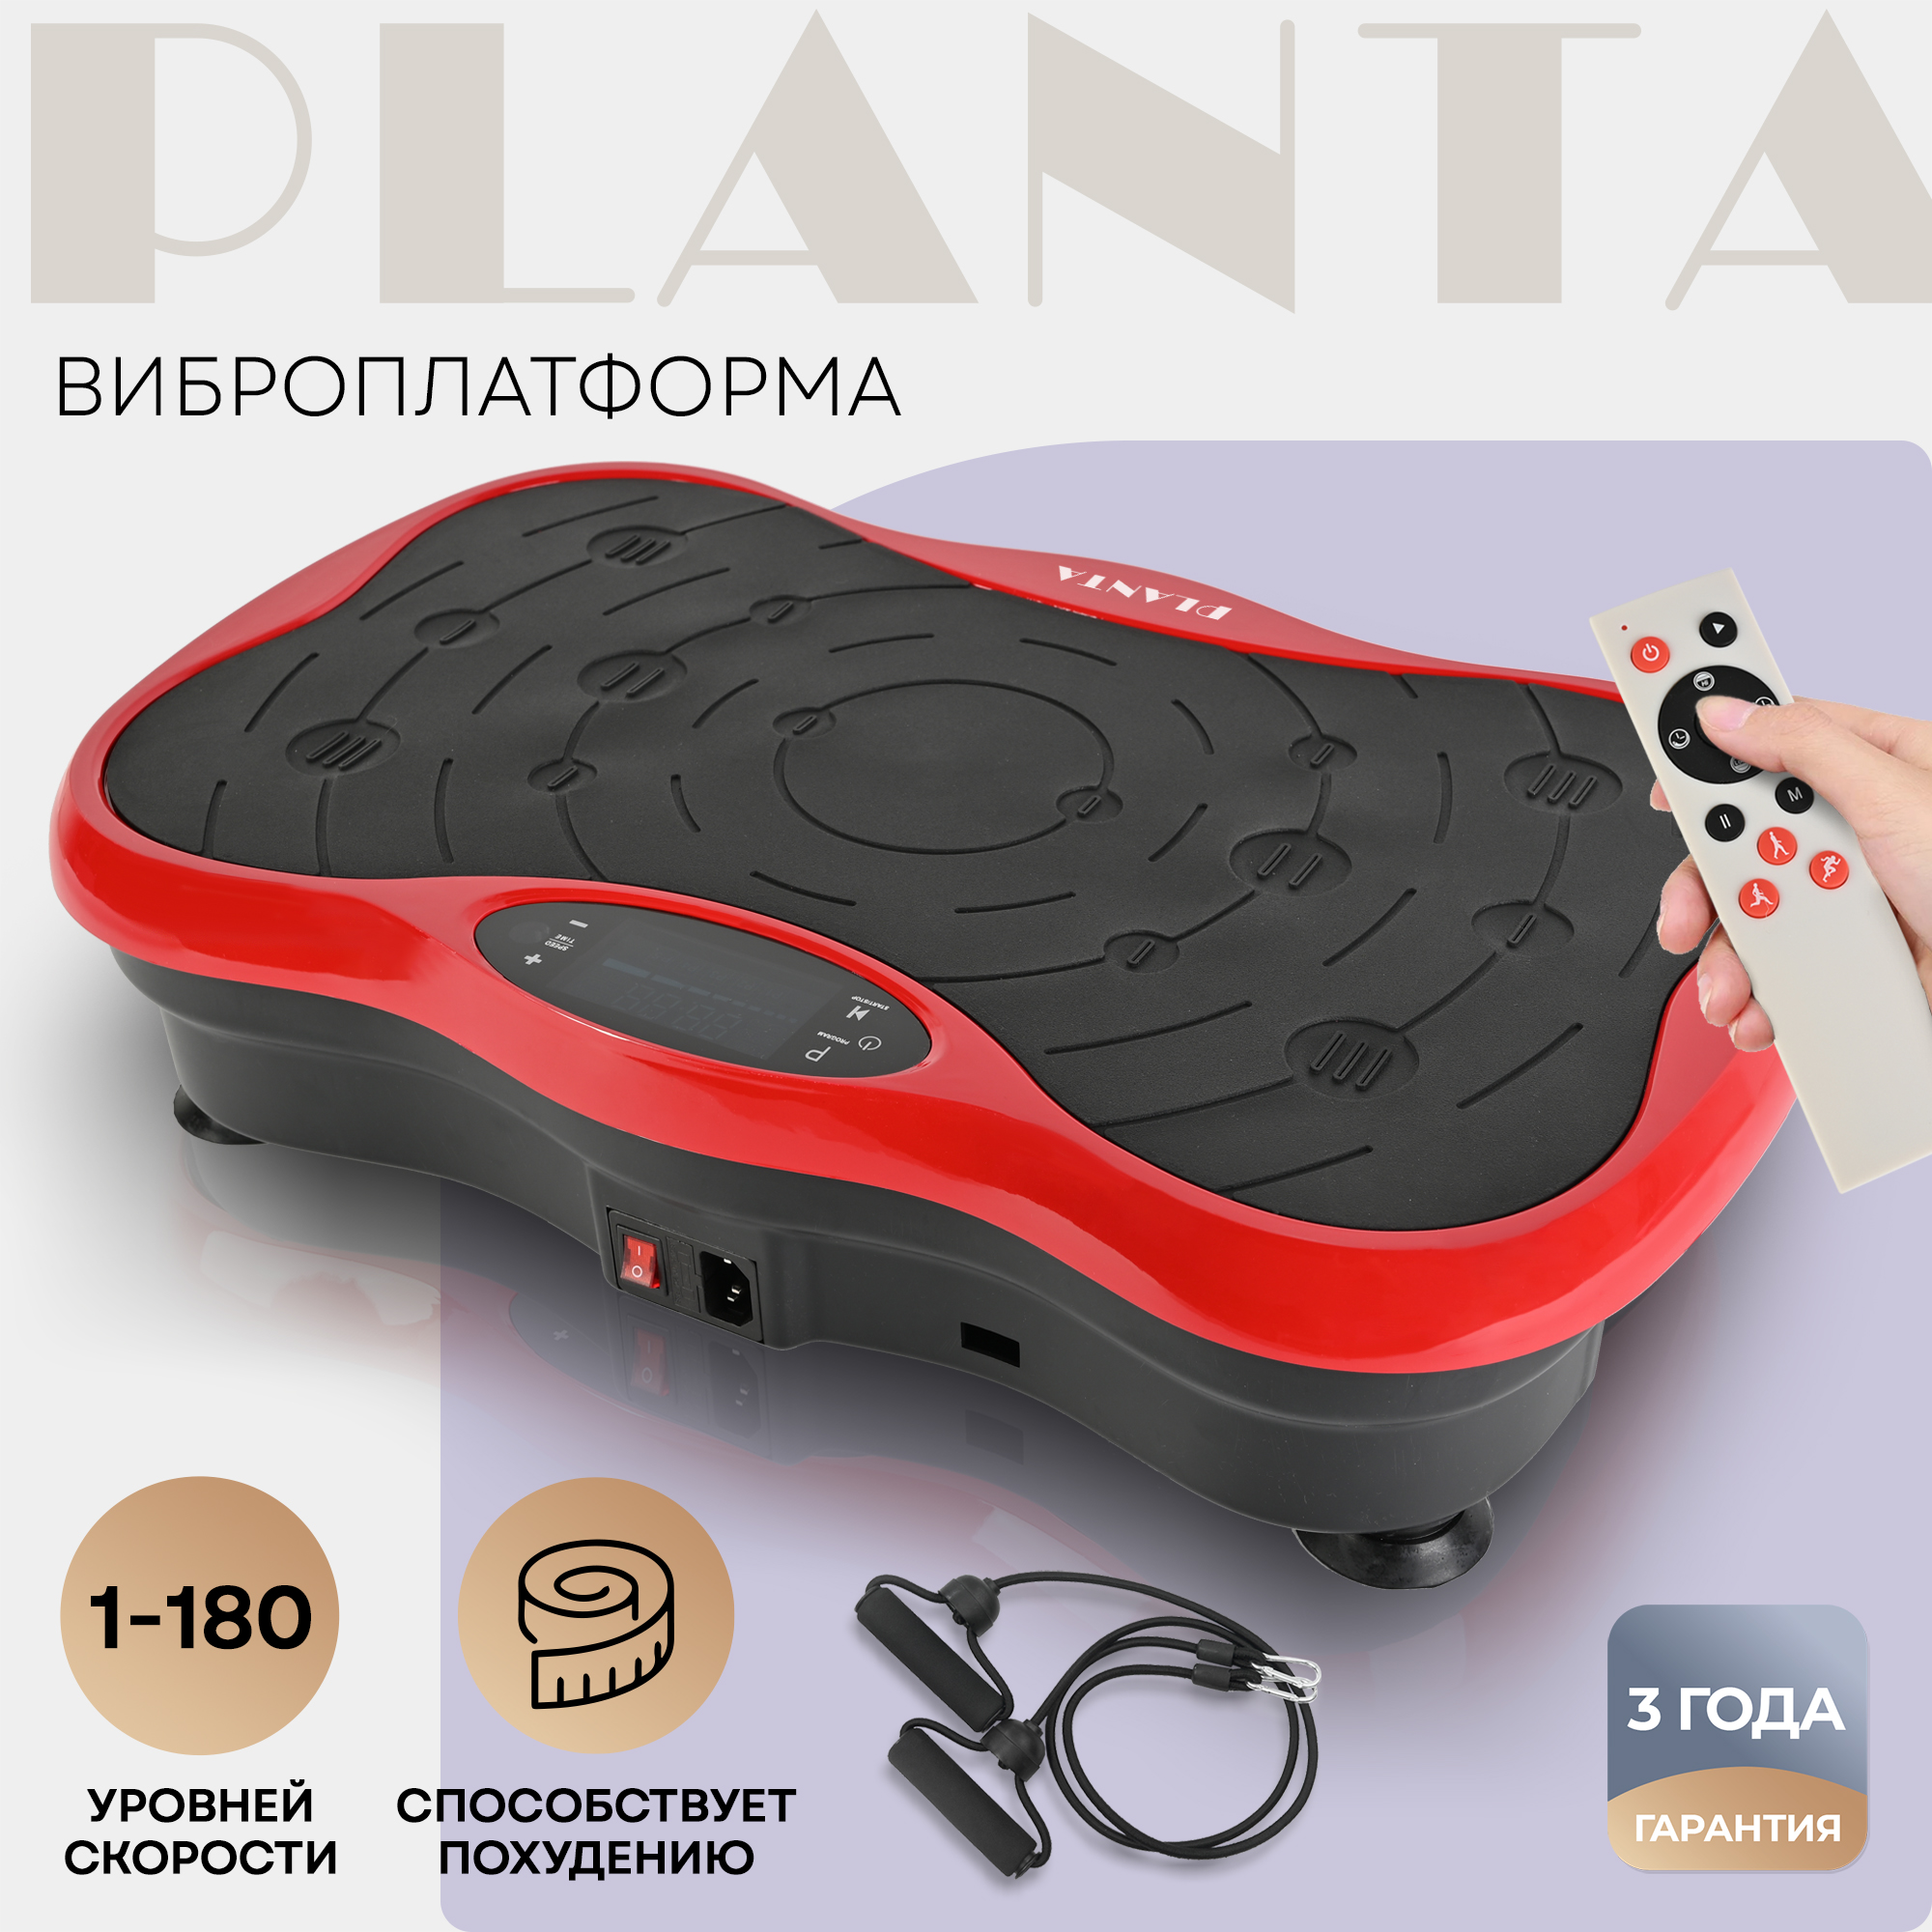 Виброплатформа Planta тренажер для похудения VP-03 эспандеры в комплекте - фото 1